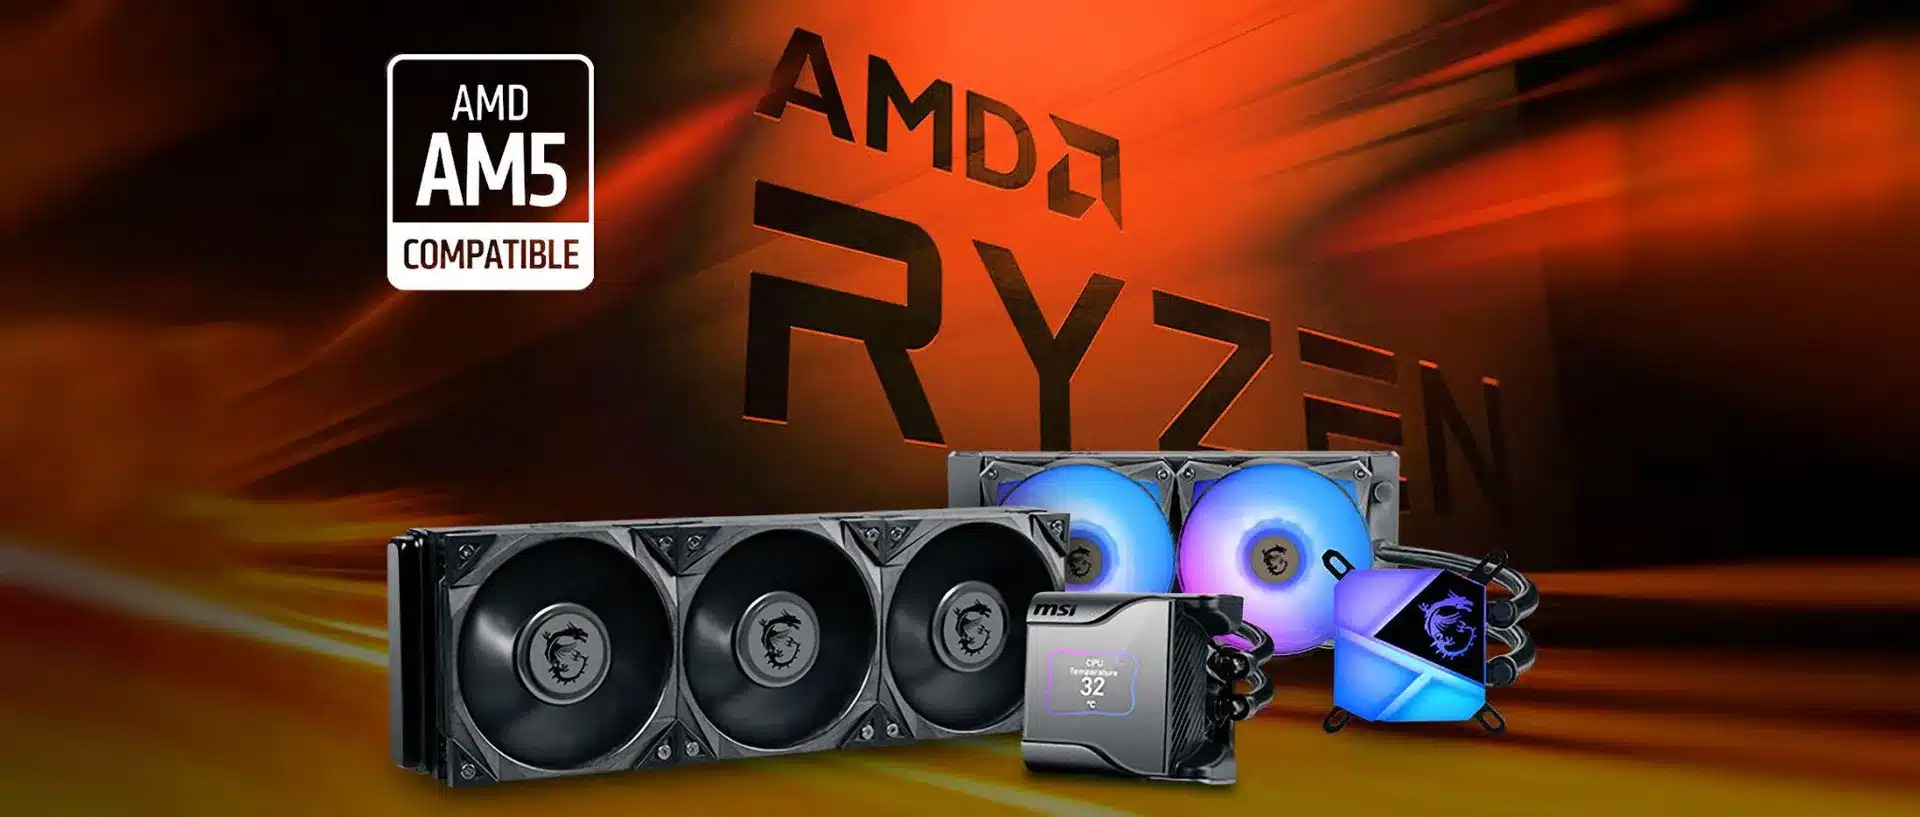 MSI-AMD-AM5, GamersRD